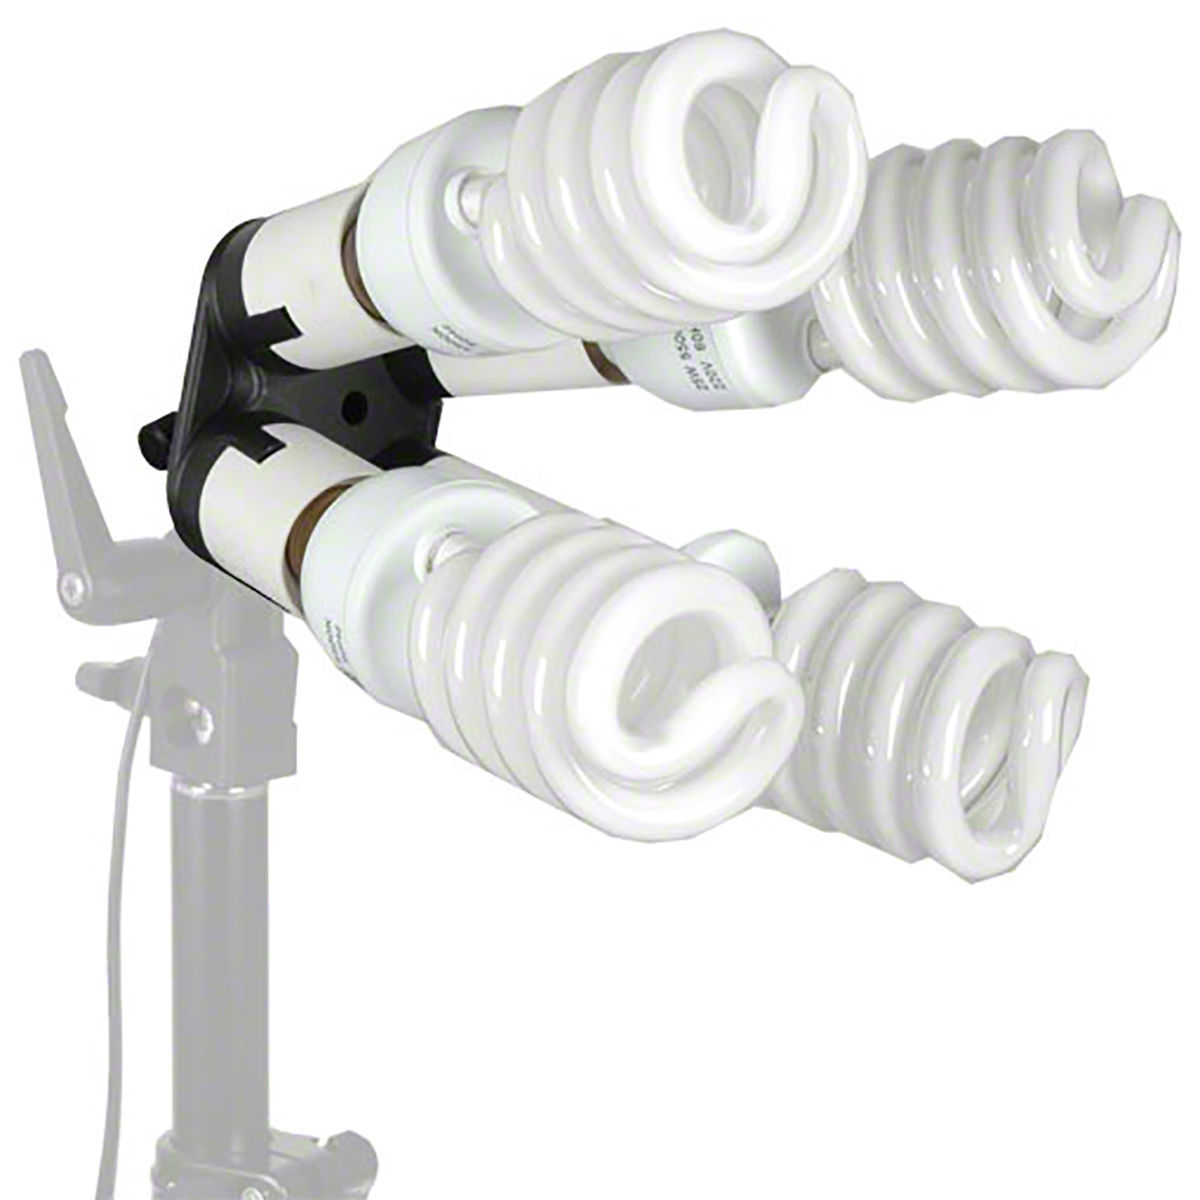 Walimex 4-fach Lampenhalterung mit 4 Tageslampen - Foto